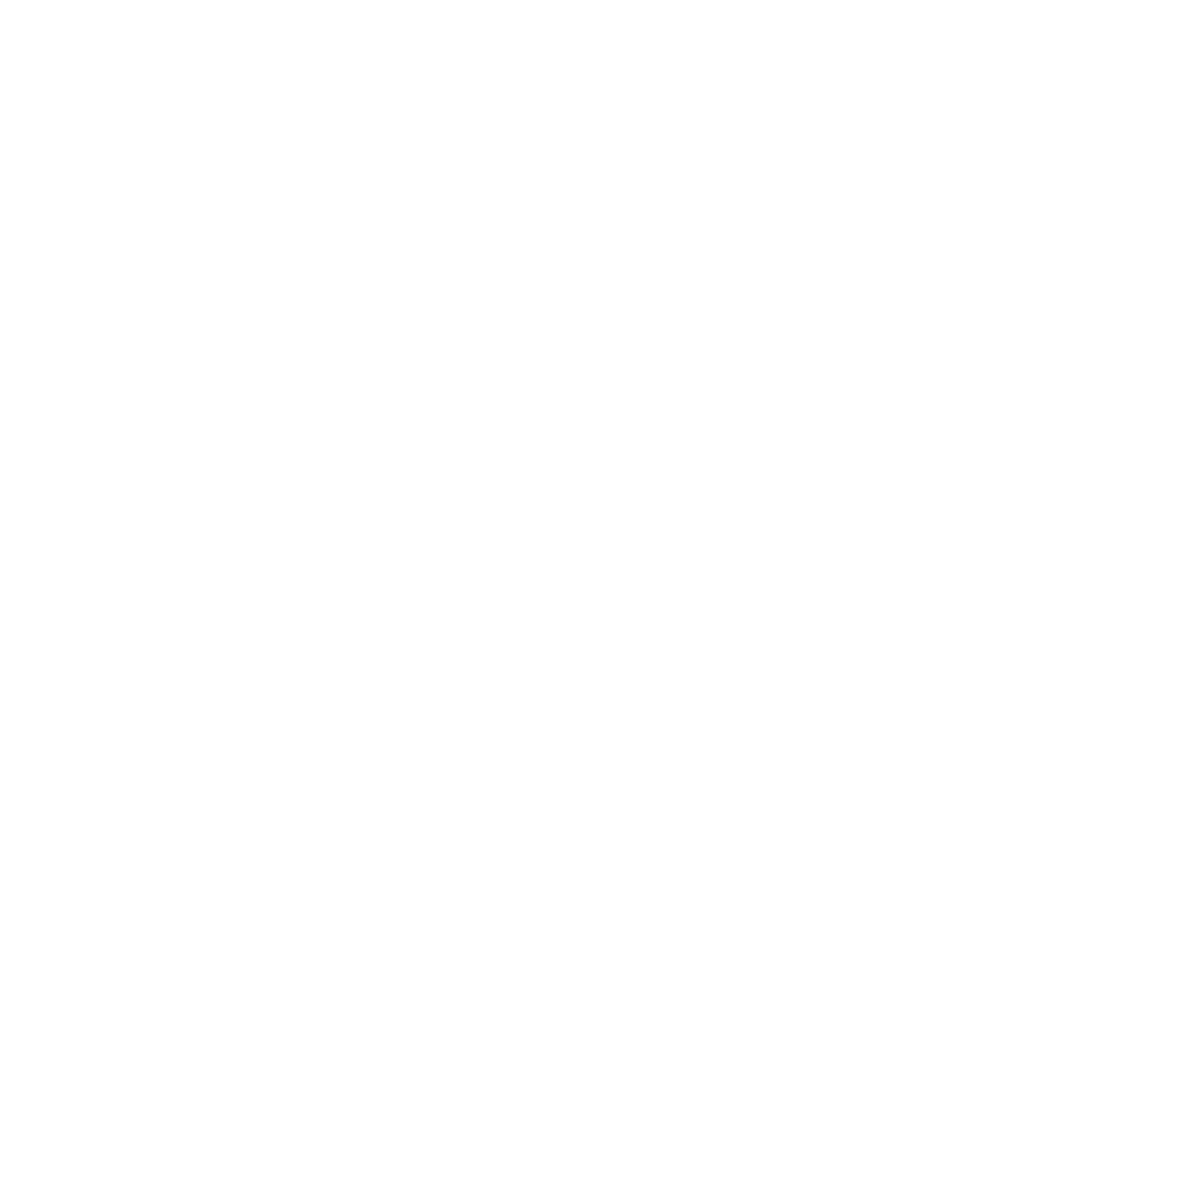 Hyphen sports